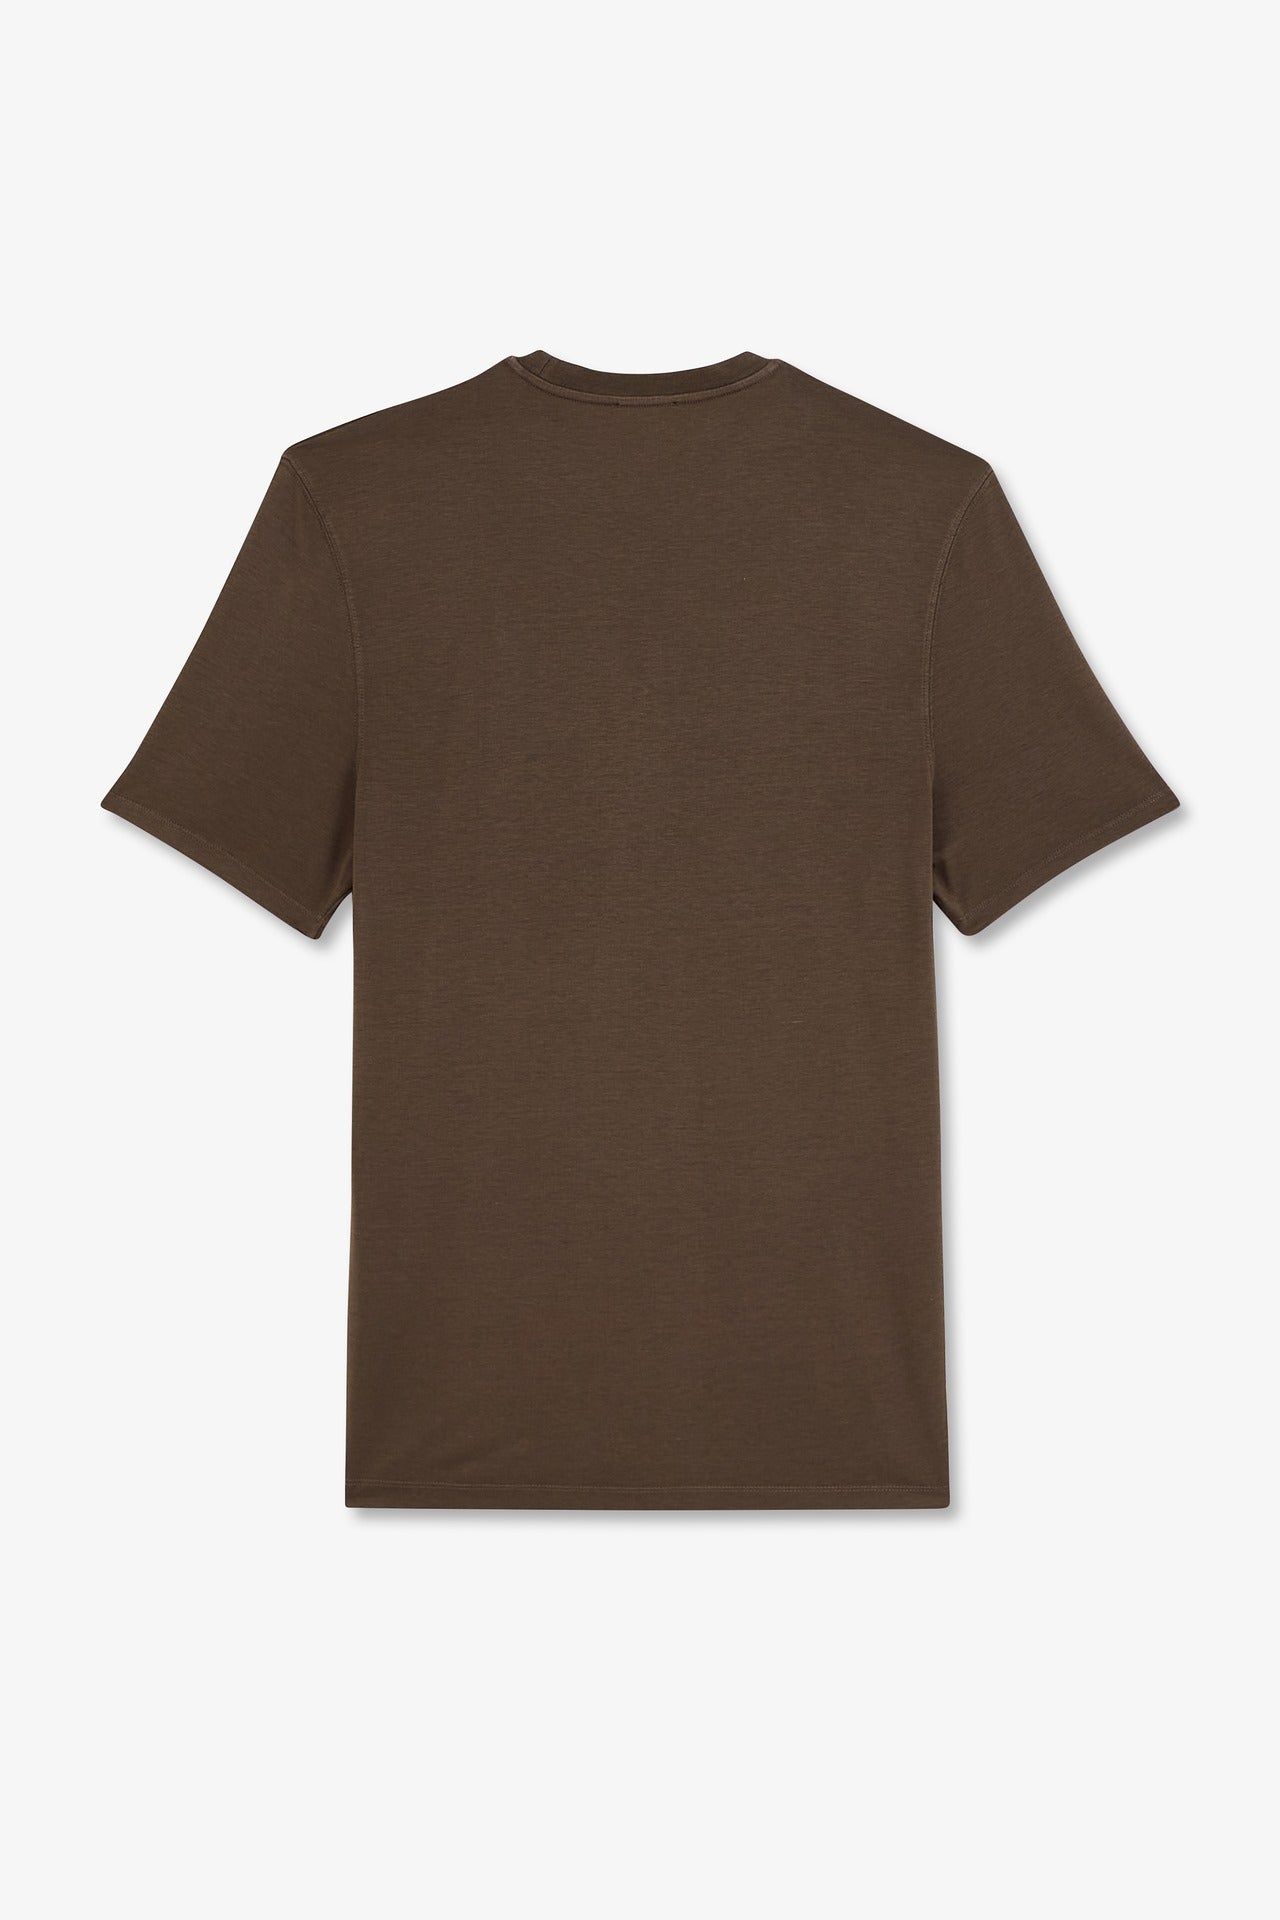 T-shirt manches courtes marron uni